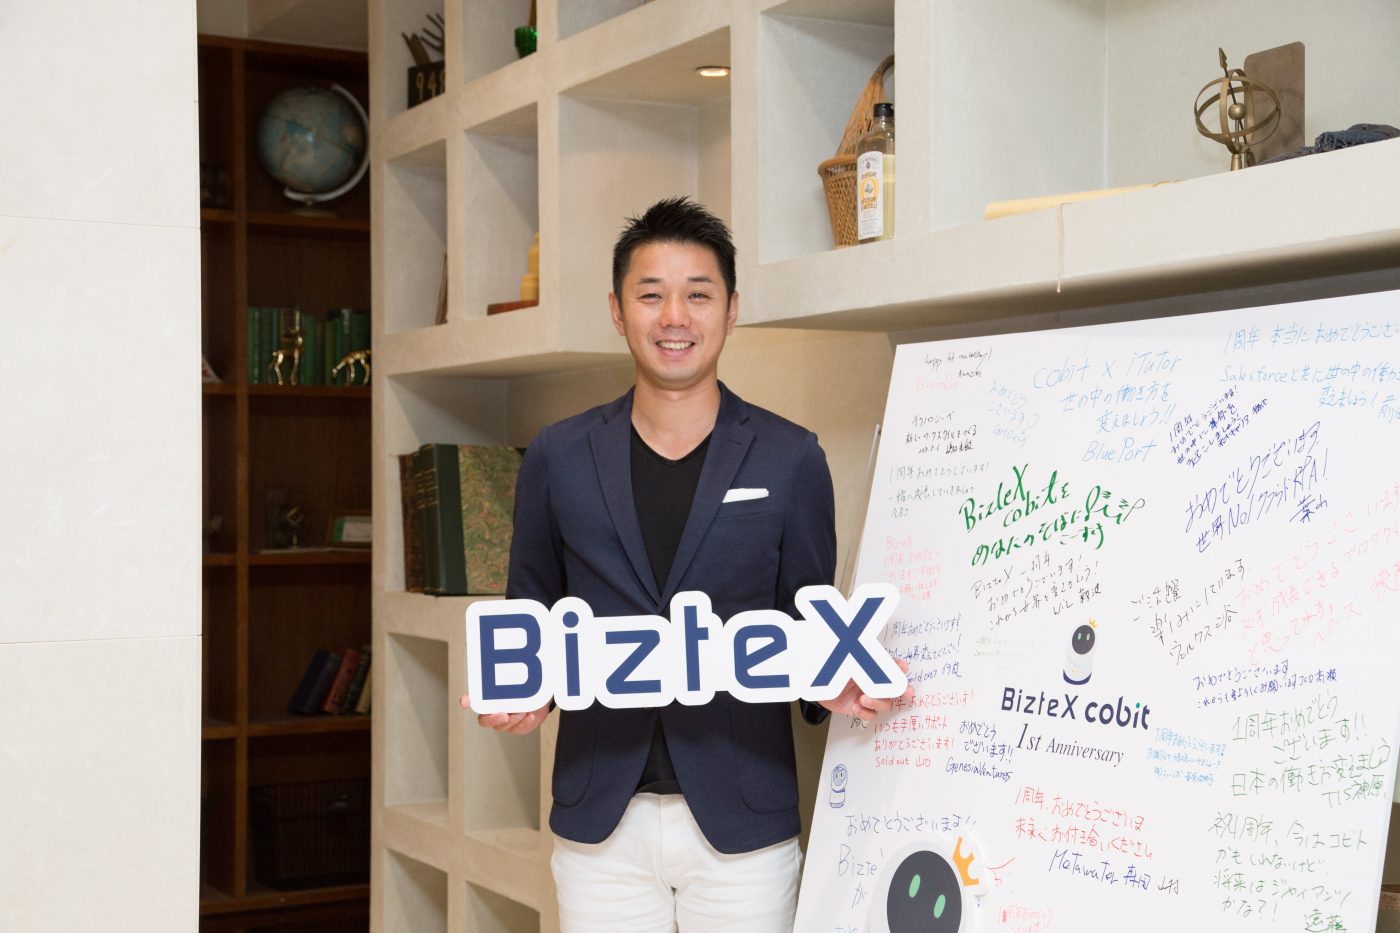 BizteX 嶋田 光敏CEOインタビュー ビジネスでも重要なのは「自分の強みを理解して活かすこと」